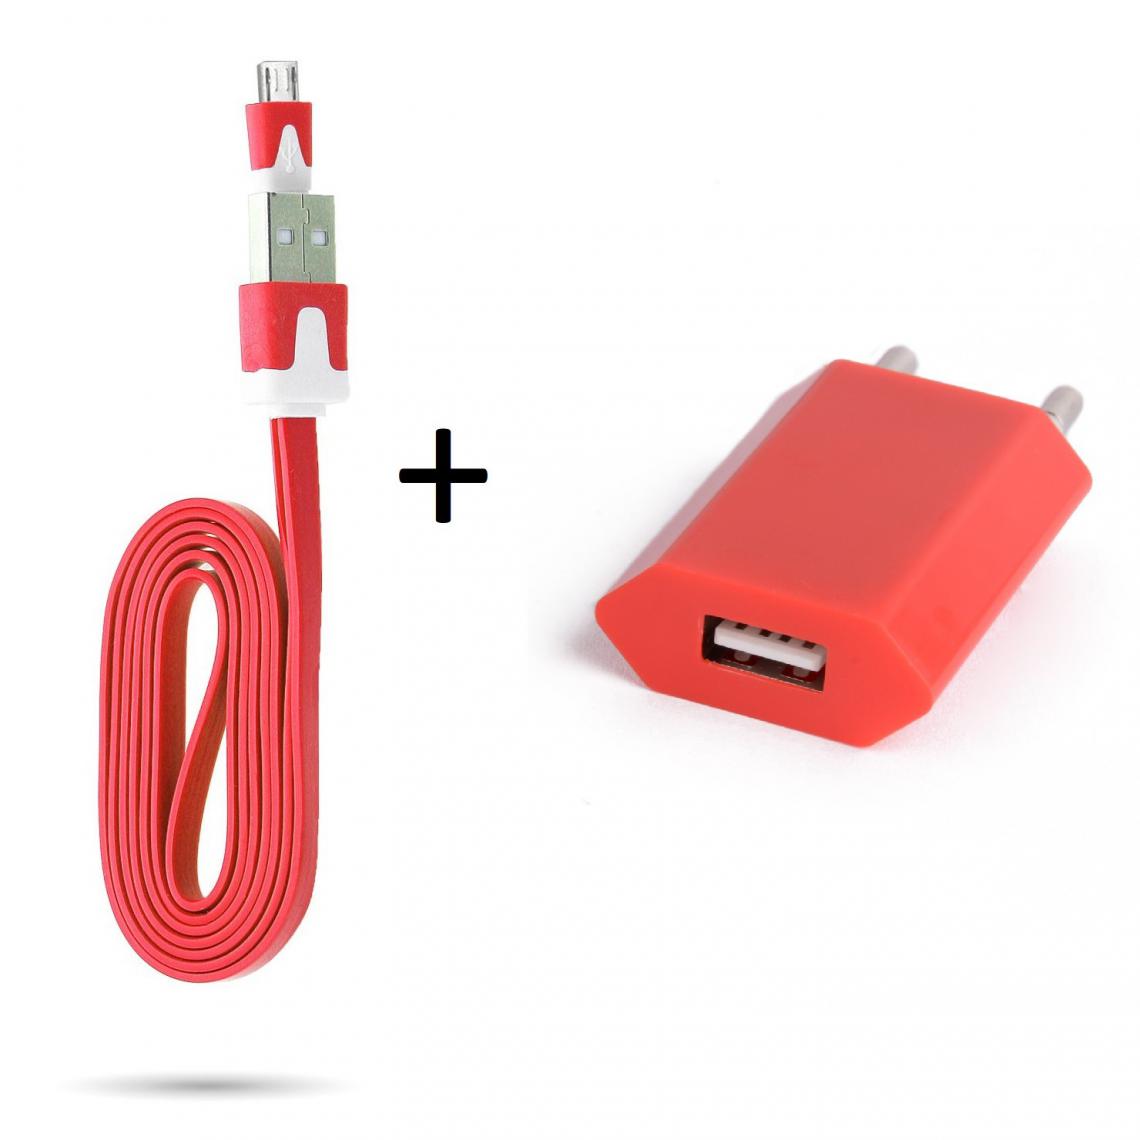 Shot - Cable Noodle 1m Chargeur + Prise Secteur pour WIKO View 2 Plus Smartphone Micro USB Murale Pack Android (ROUGE) - Chargeur secteur téléphone